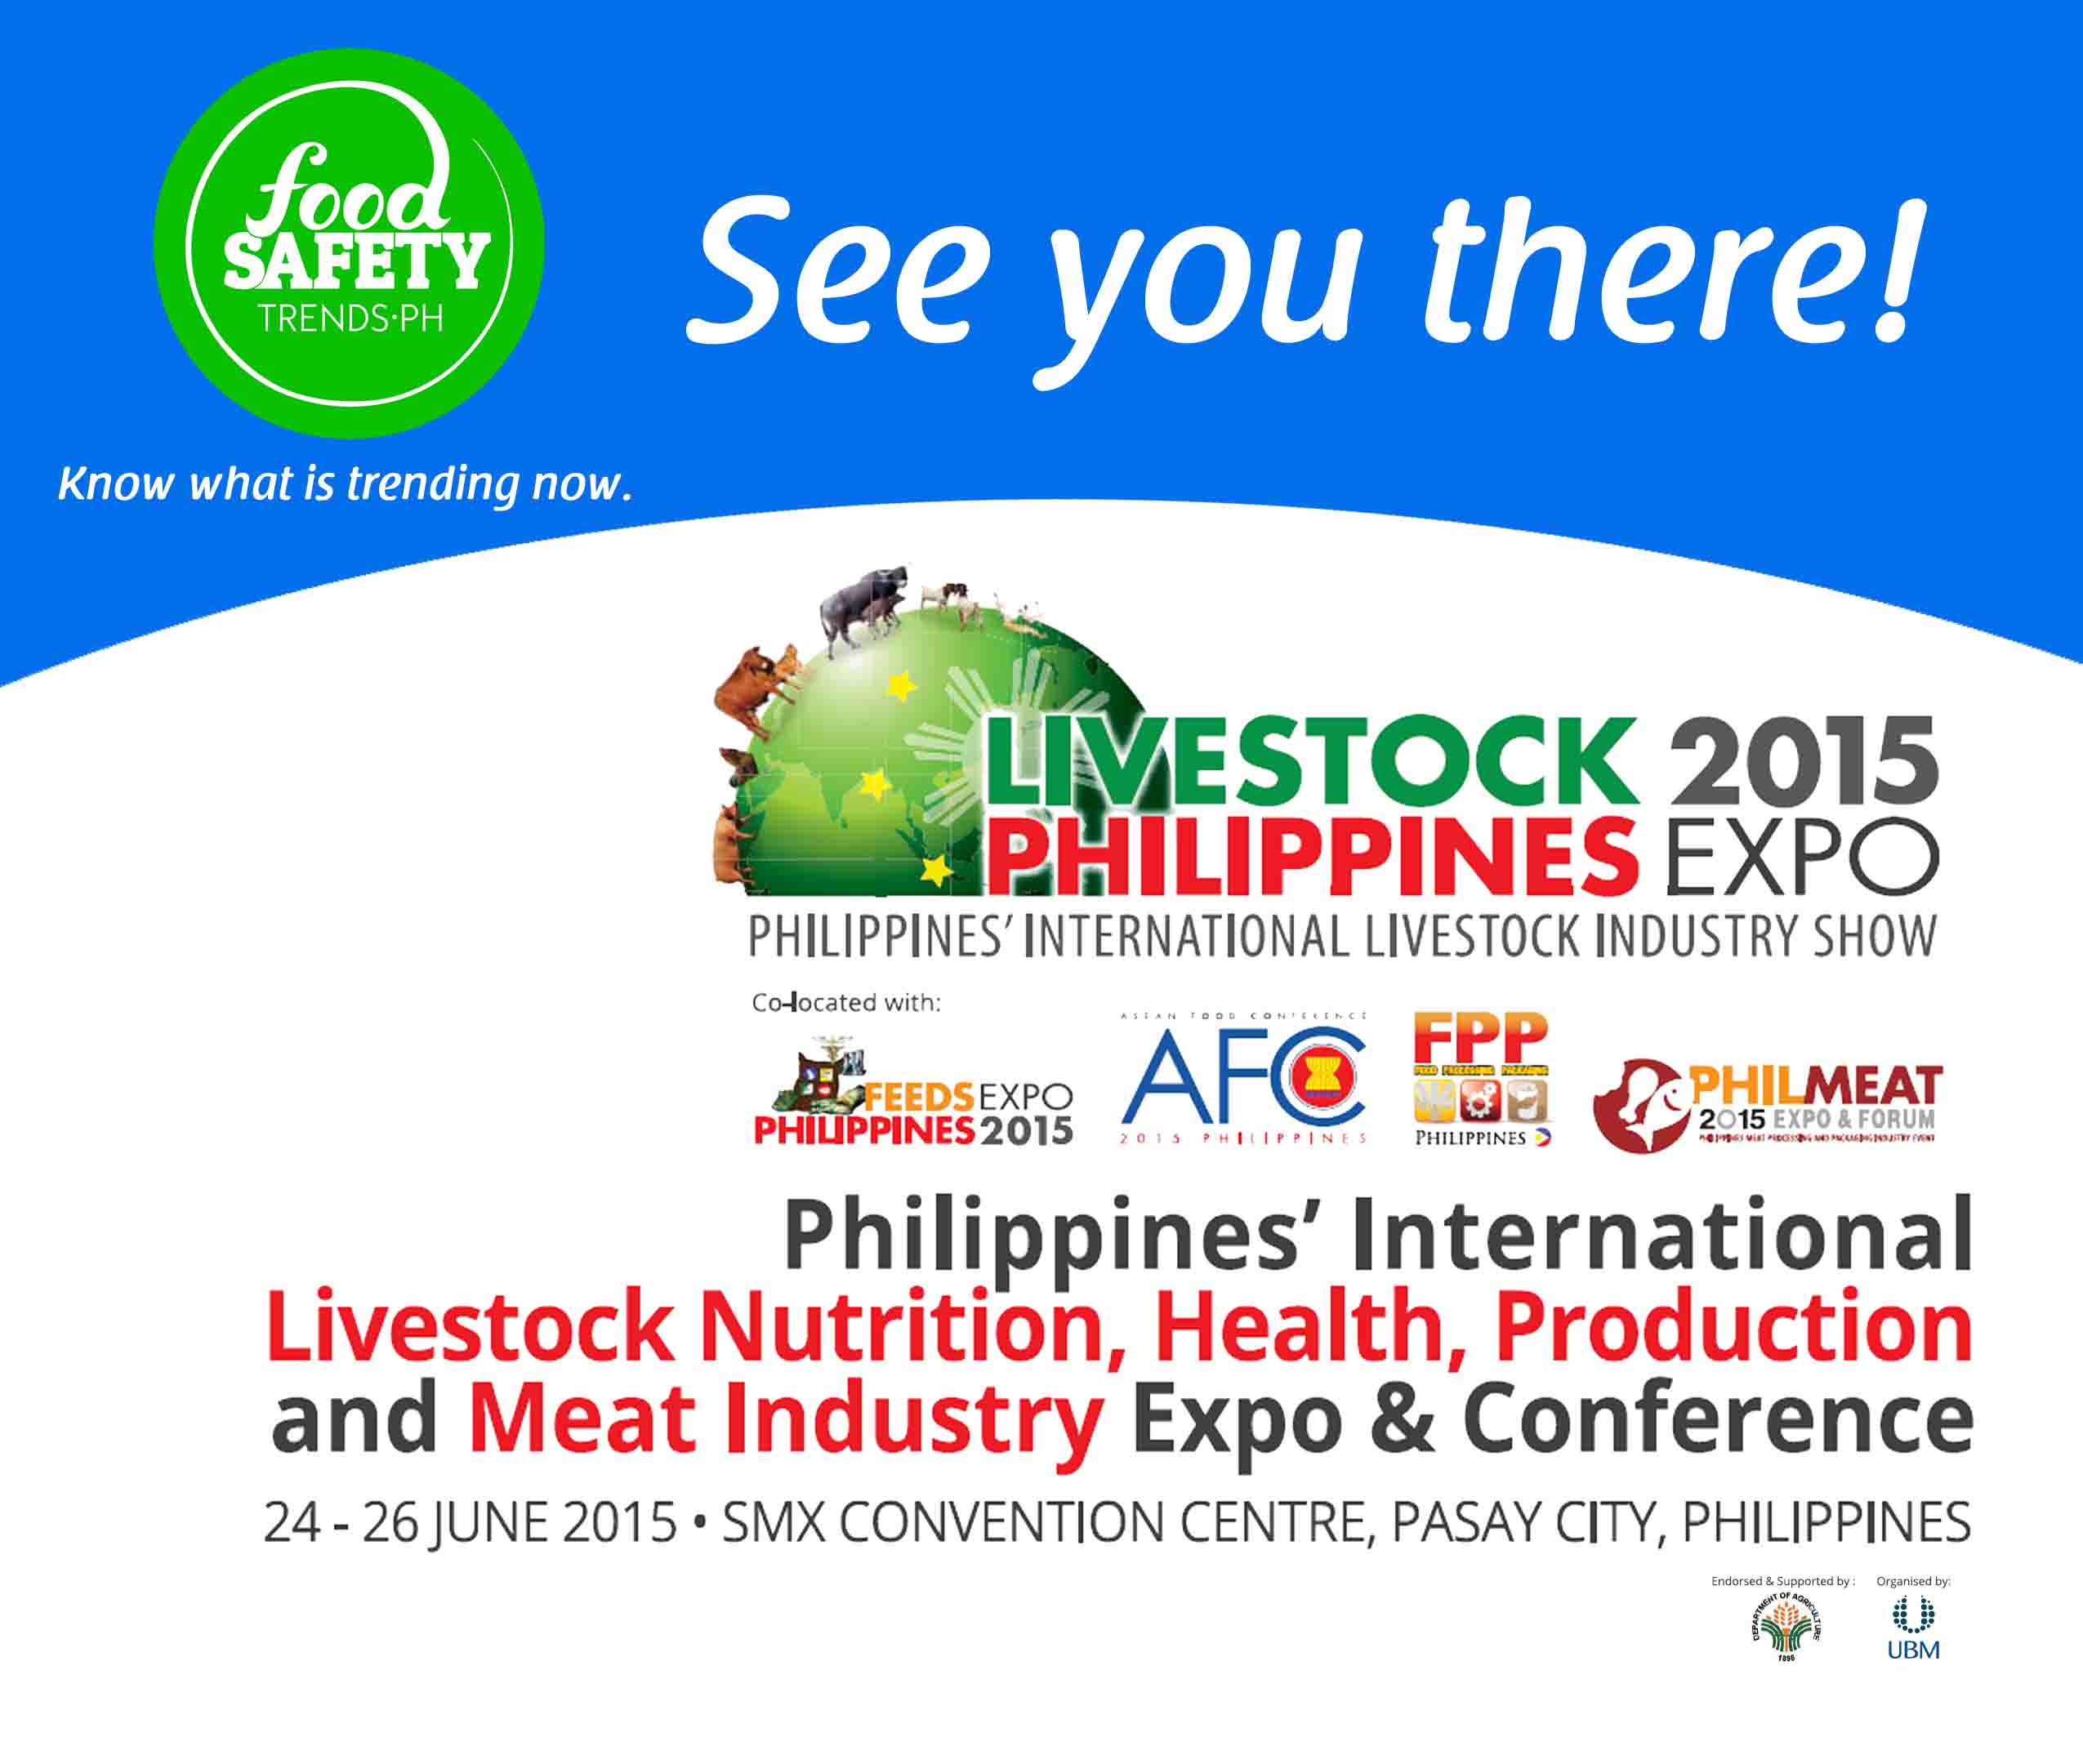 Livestock Philippines 2015 to Focus on AEC 2015